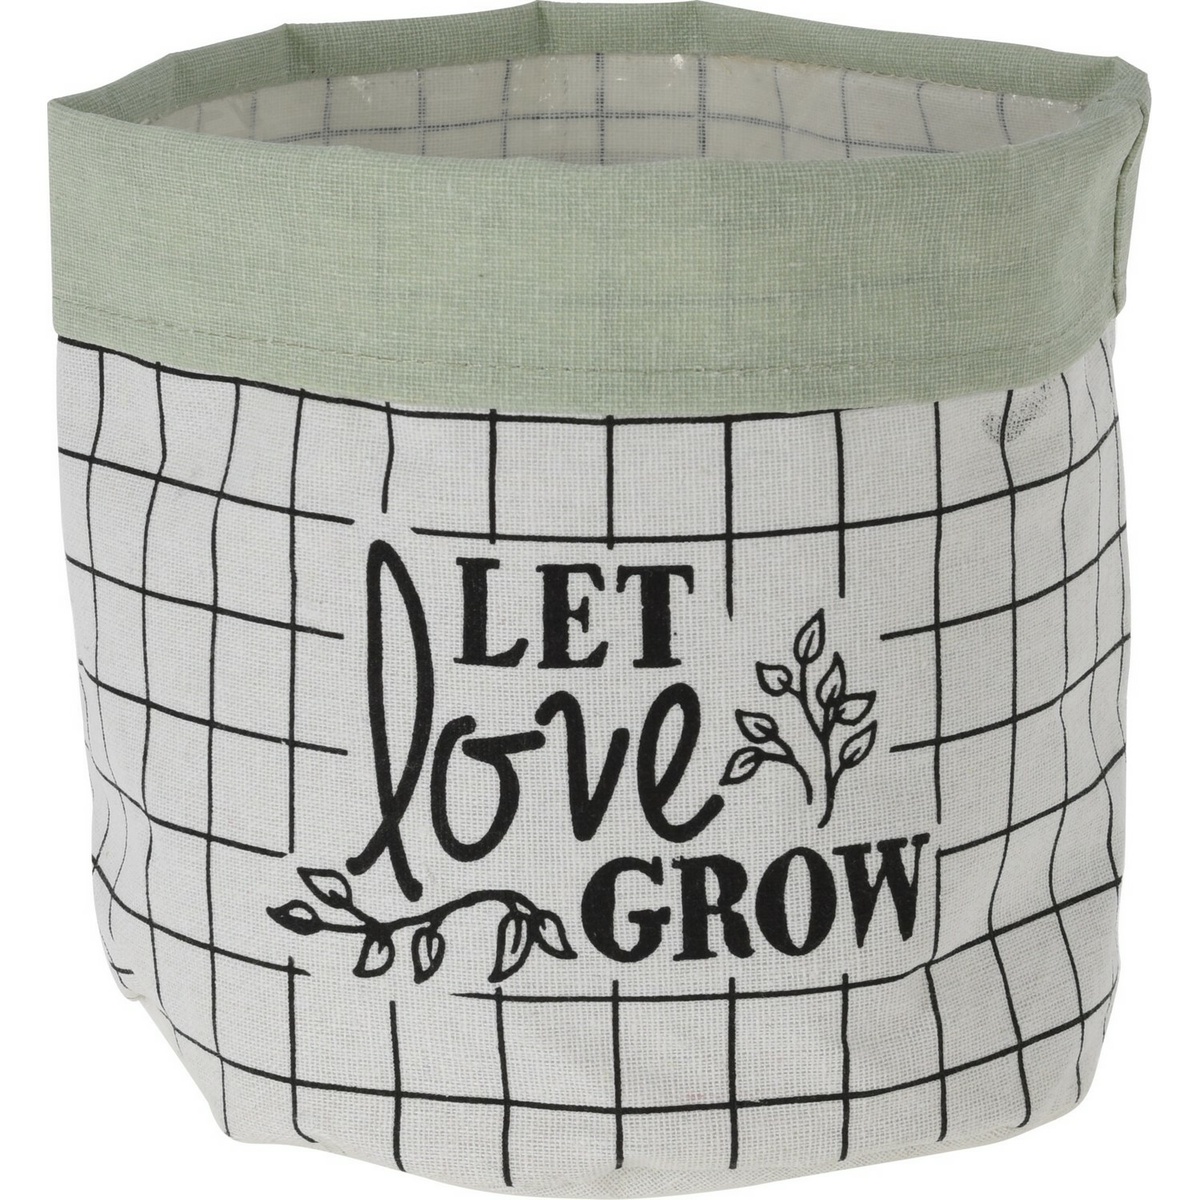 Let Love Grow textil virágtartó kaspó, 20 x 1 8 cm, világoszöld